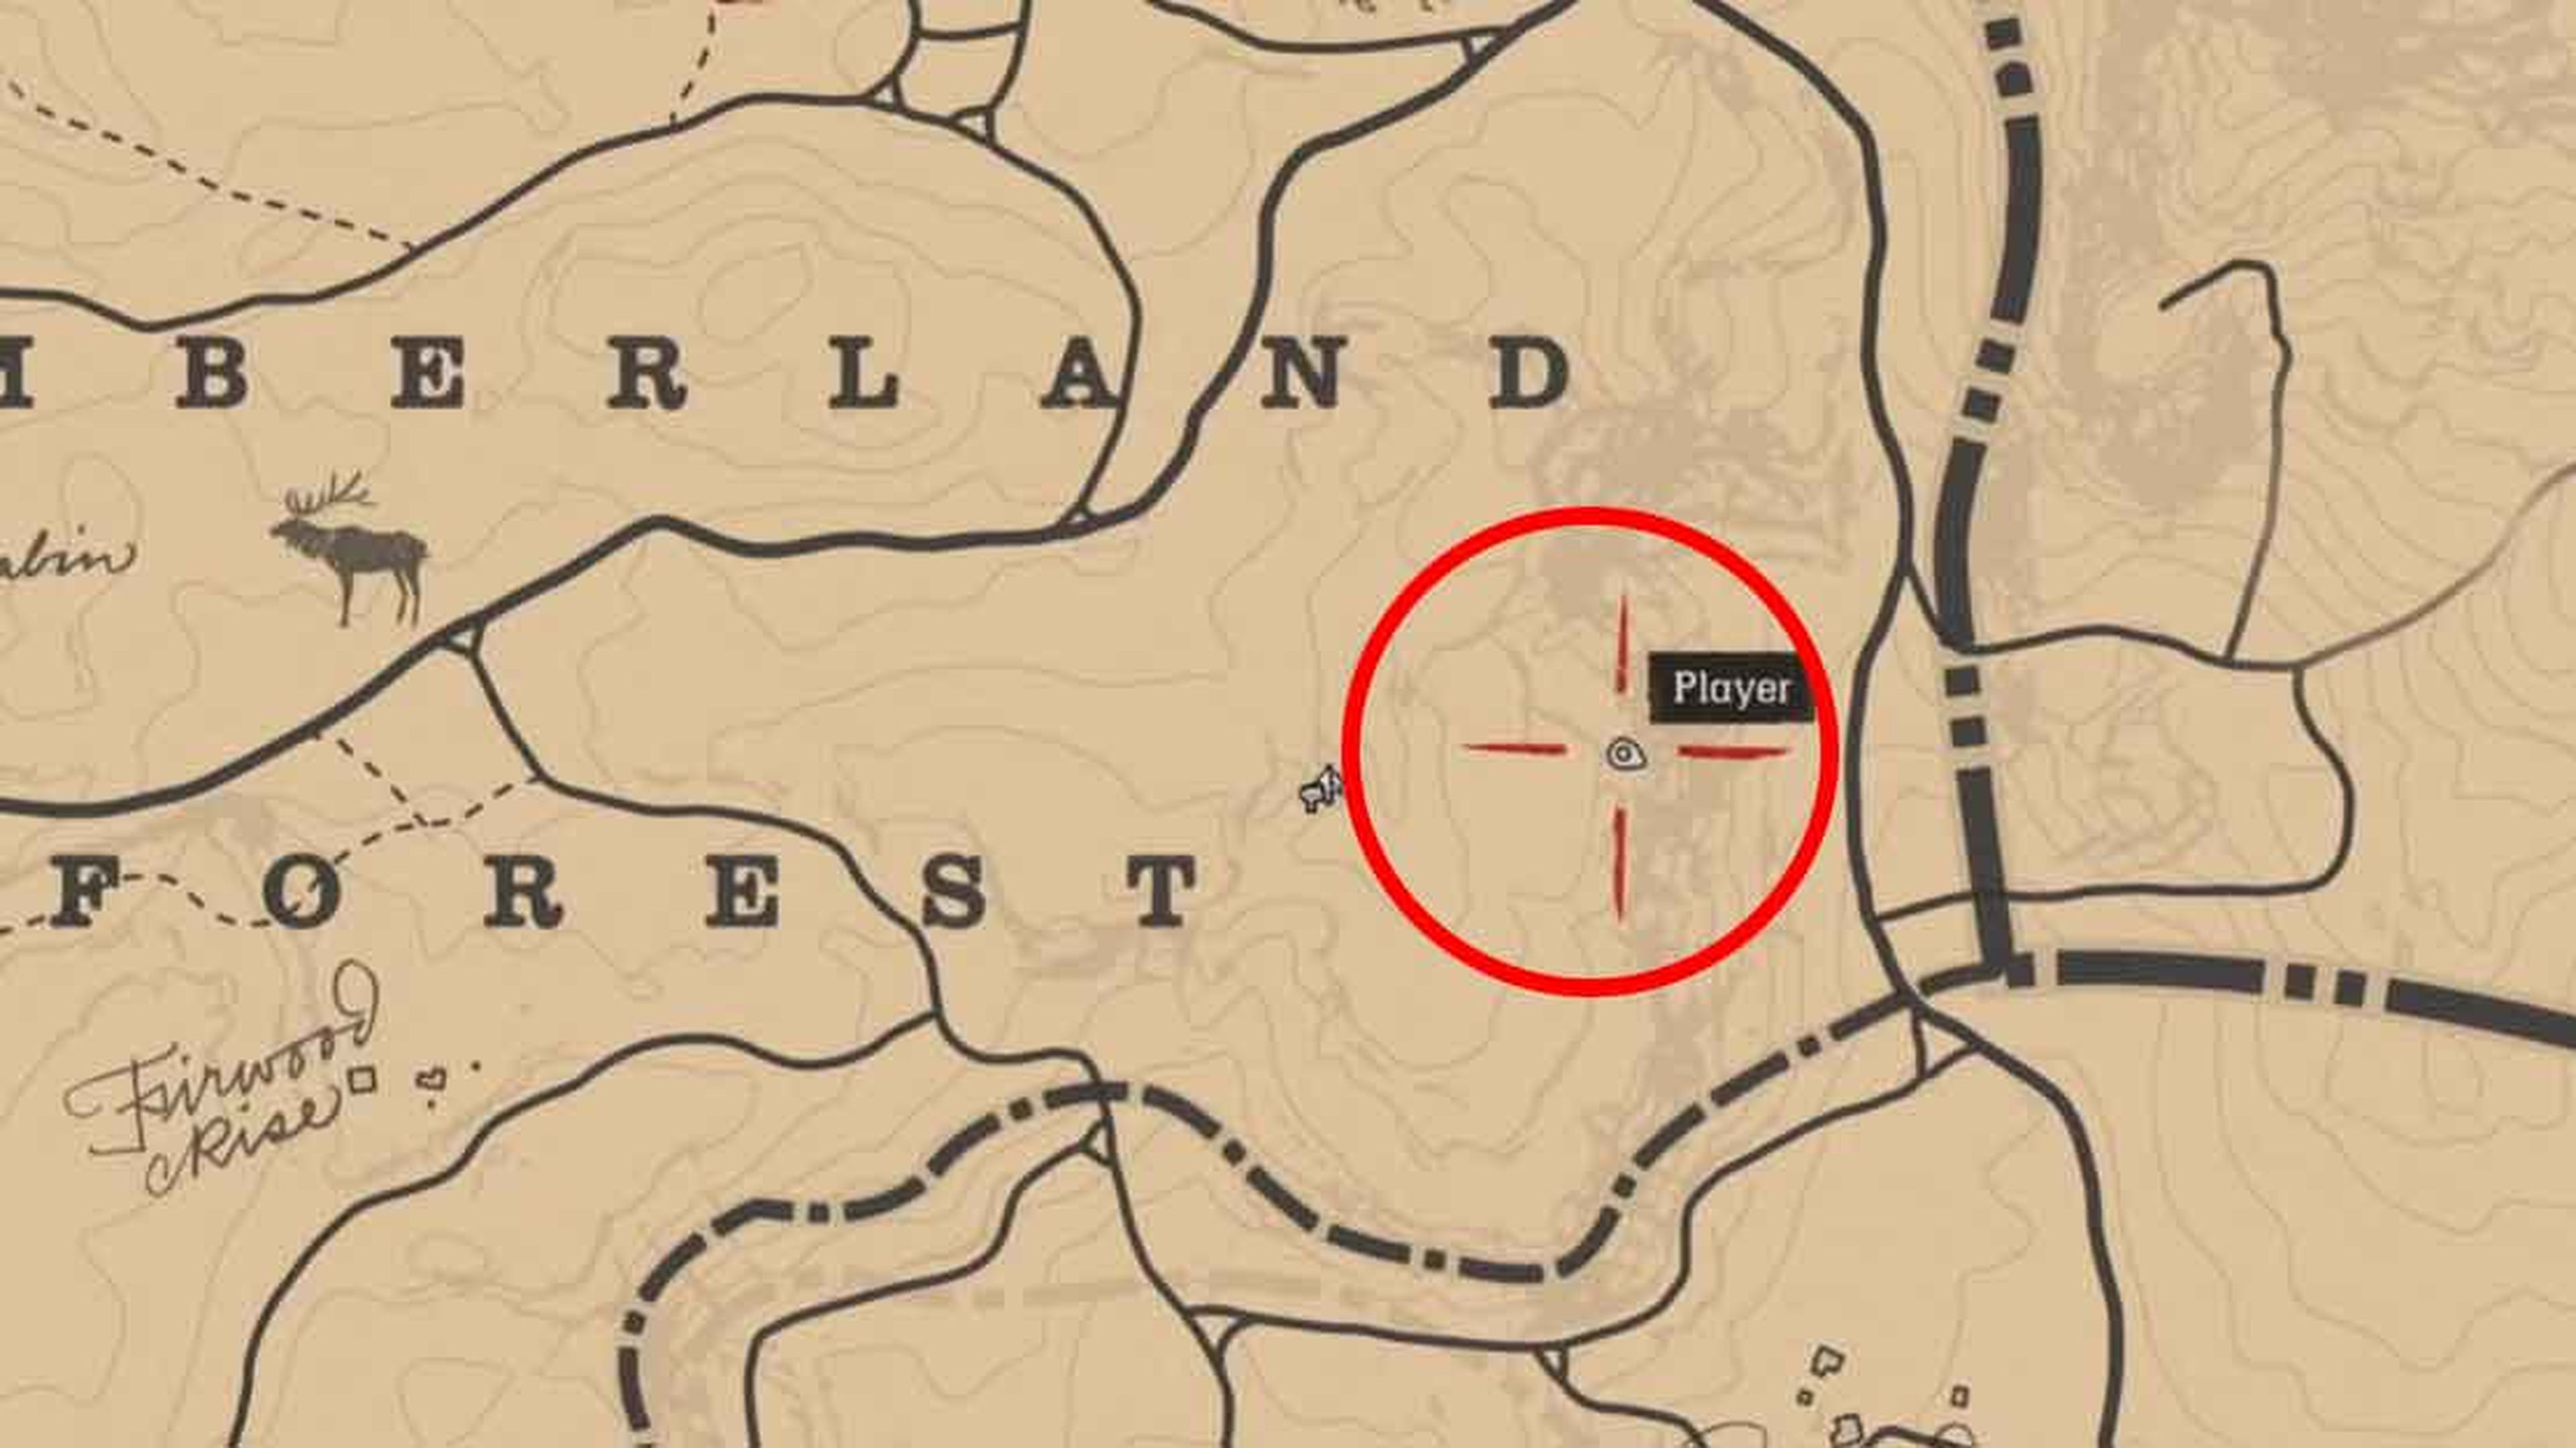 Cómo resolver los mapas del tesoro de Red Dead Redemption 2 - Moyens I/O